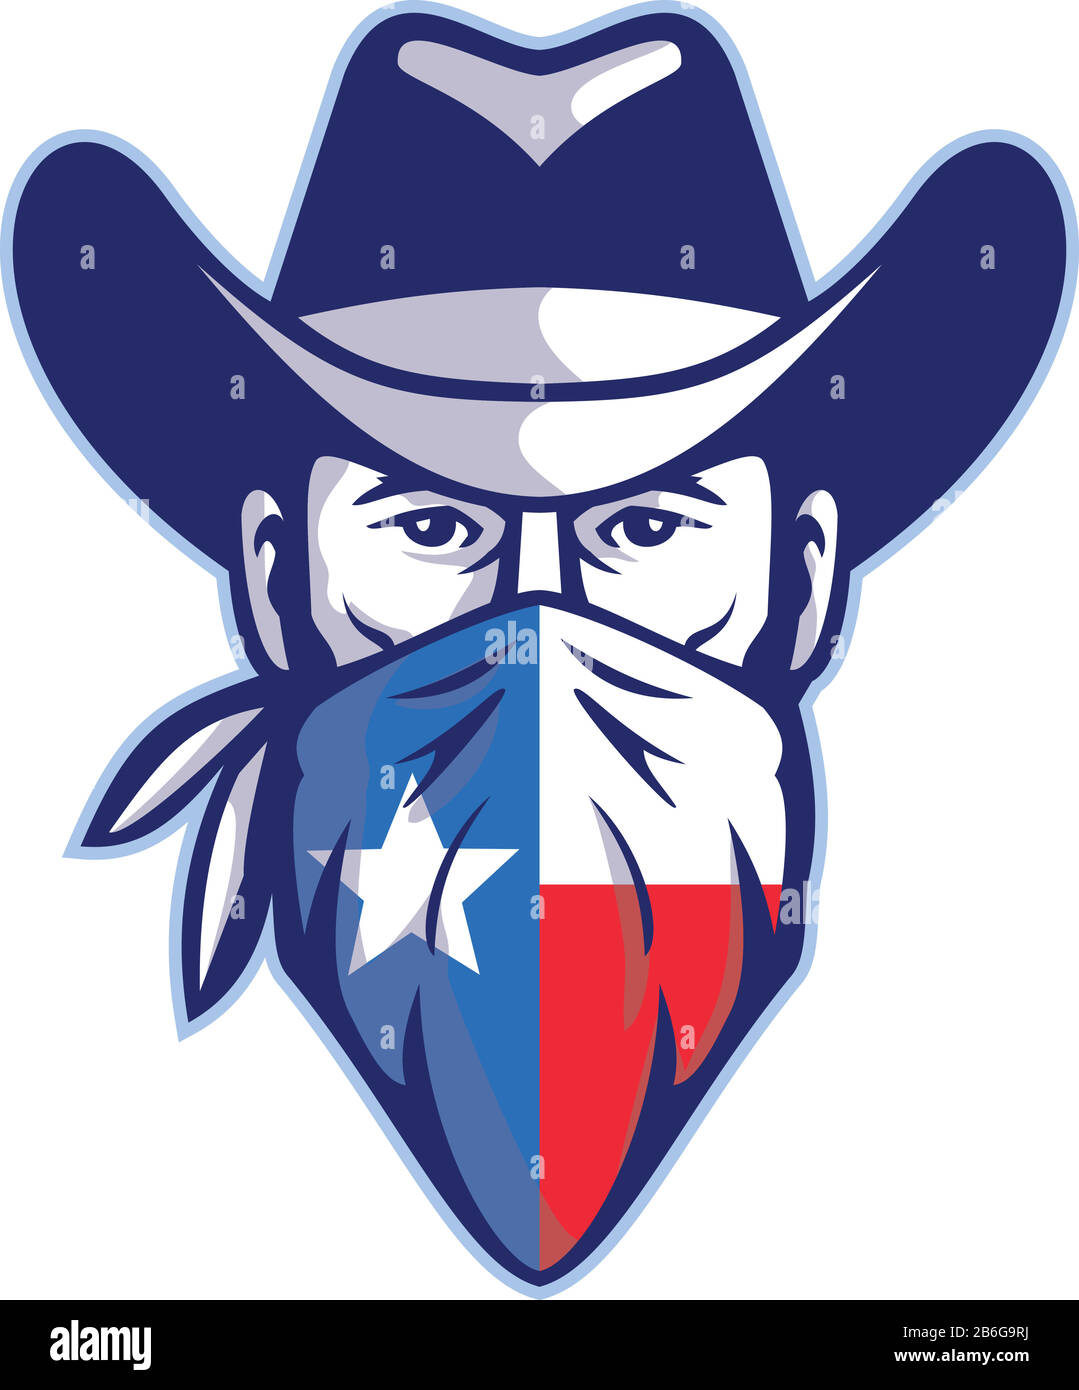 Icône mascotte illustration de la tête de Texan bandit, de l'outlaw ou de l'homme de haute-route portant un chapeau de cowboy et un bandana, un mouchoir ou une bandanna avec le drapeau Texas Lone Star Illustration de Vecteur